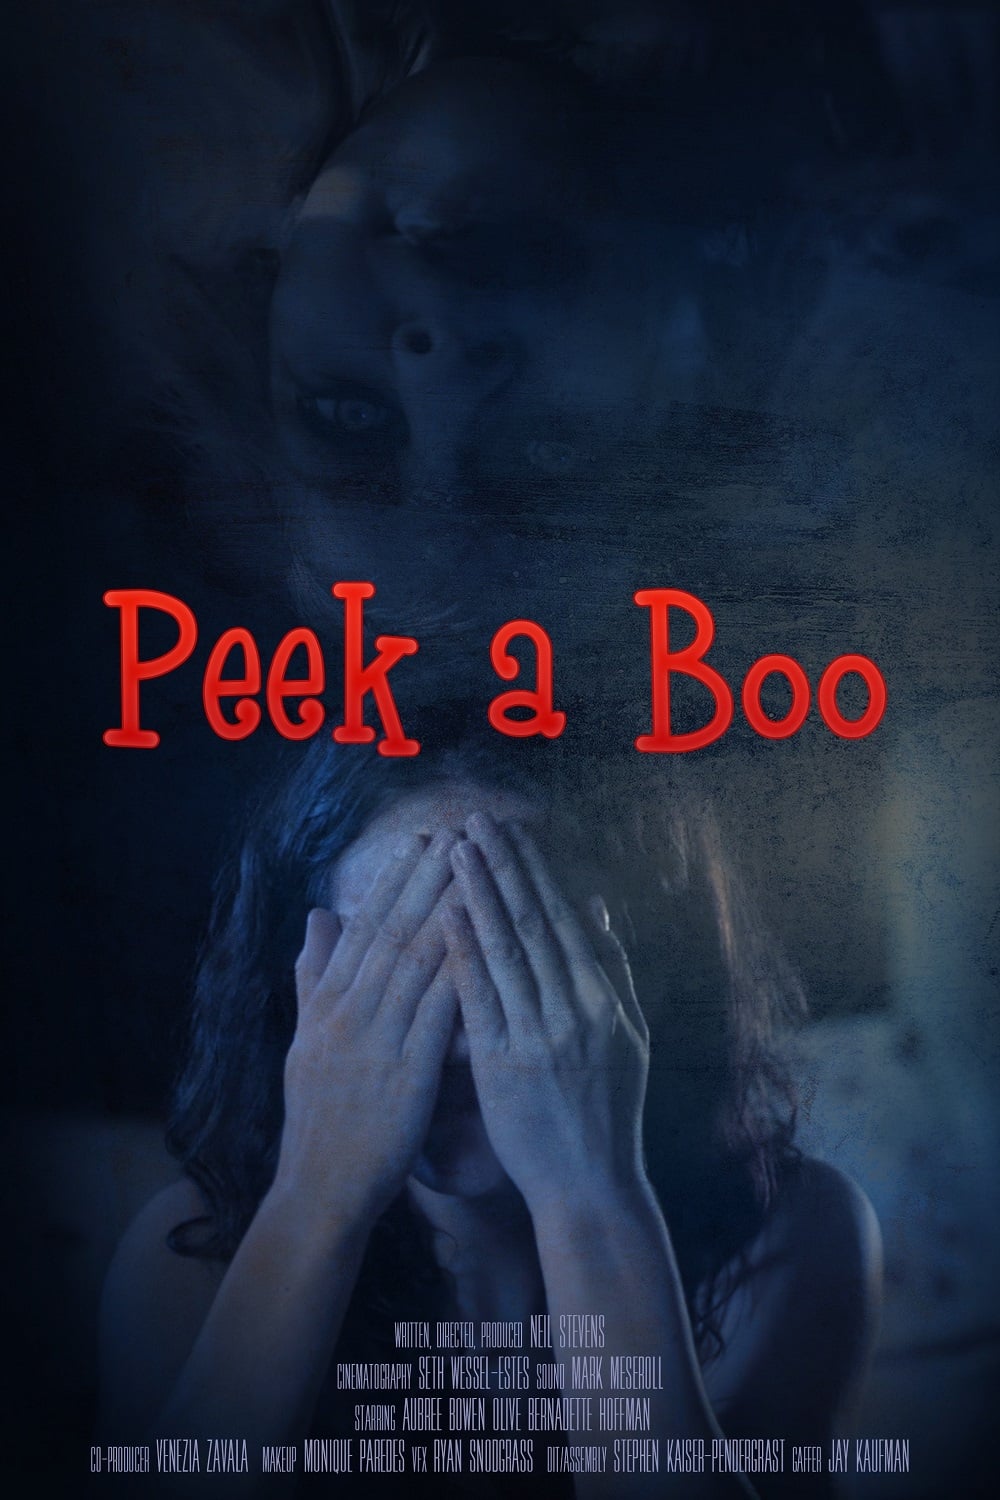 Peek a Boo